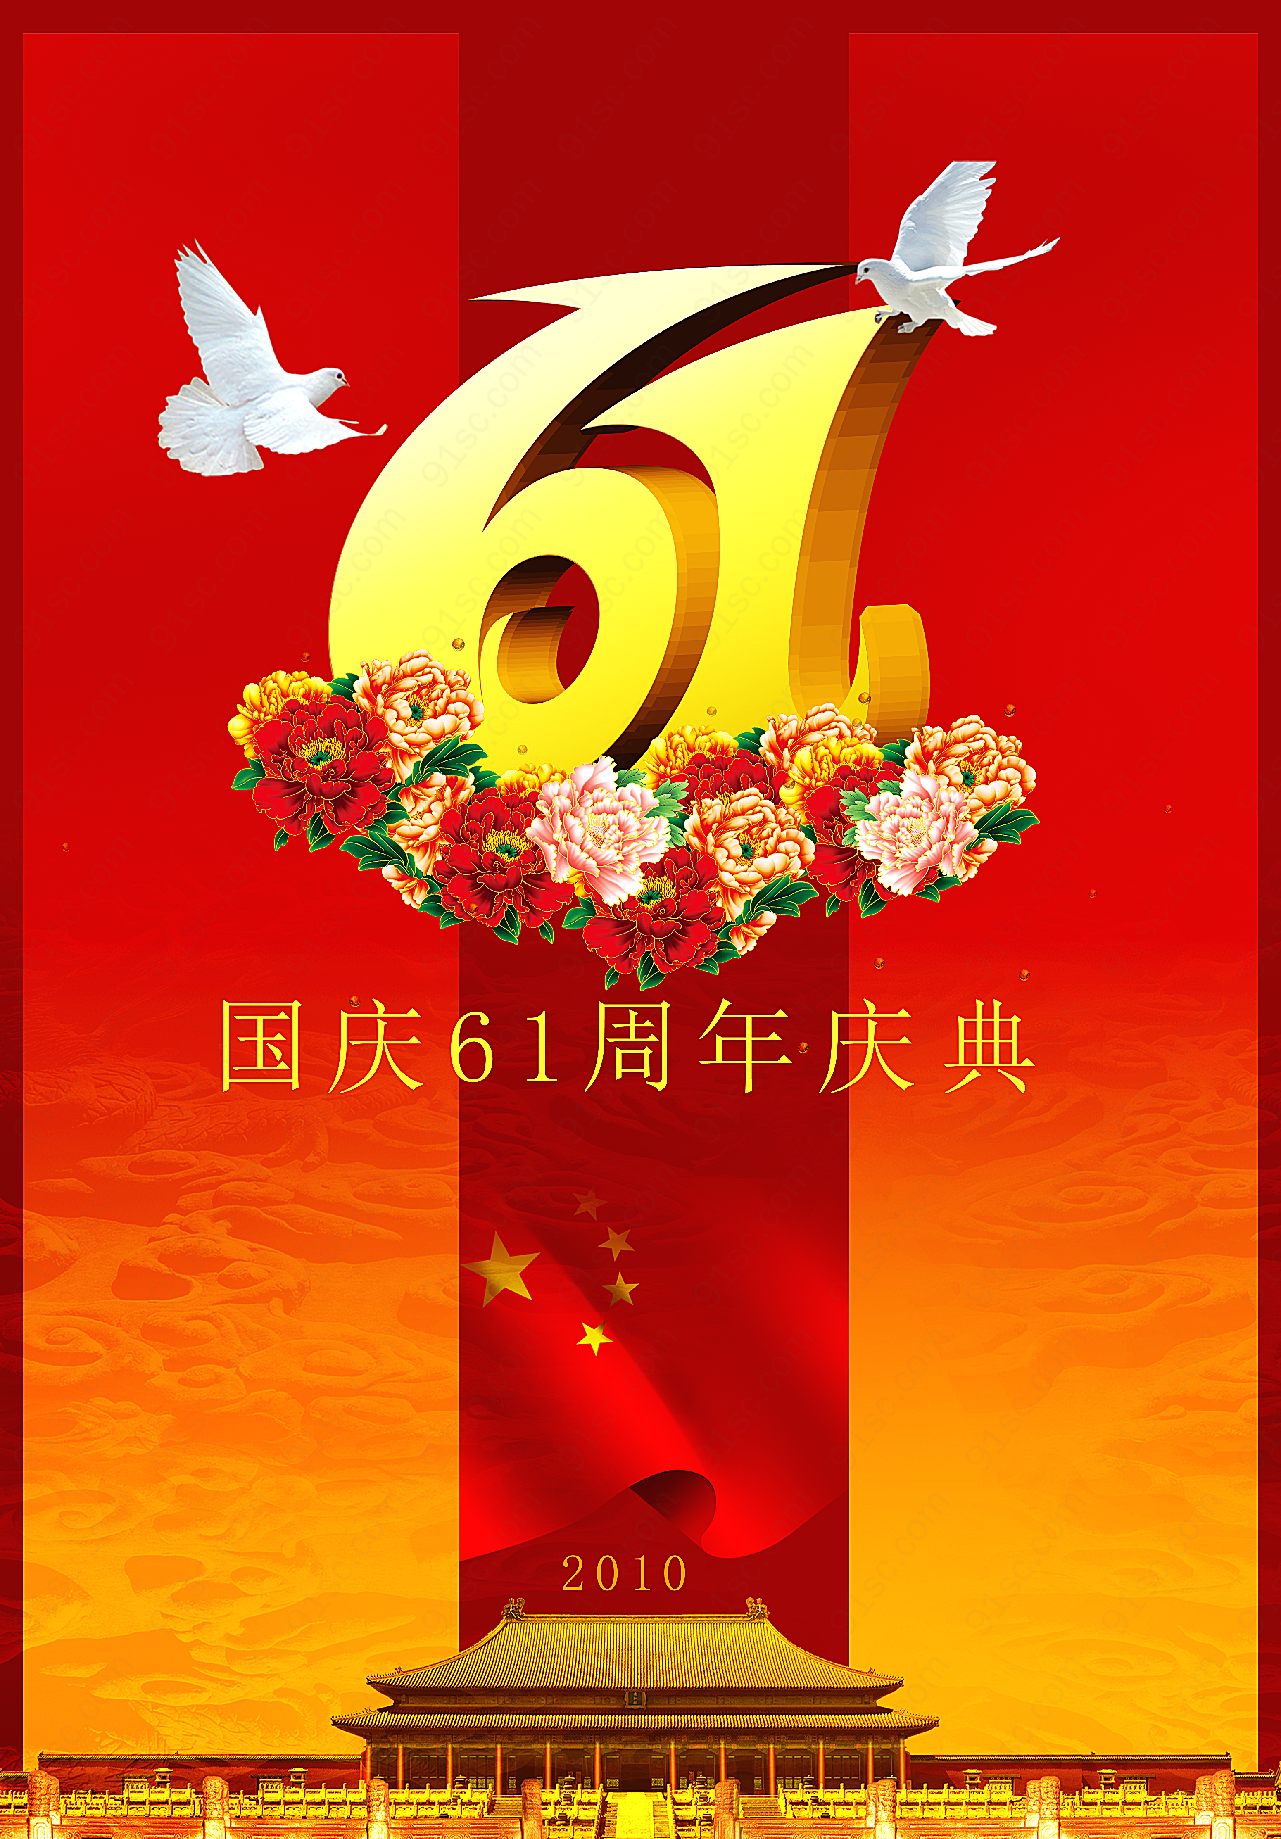 国庆61周年庆典假日节日